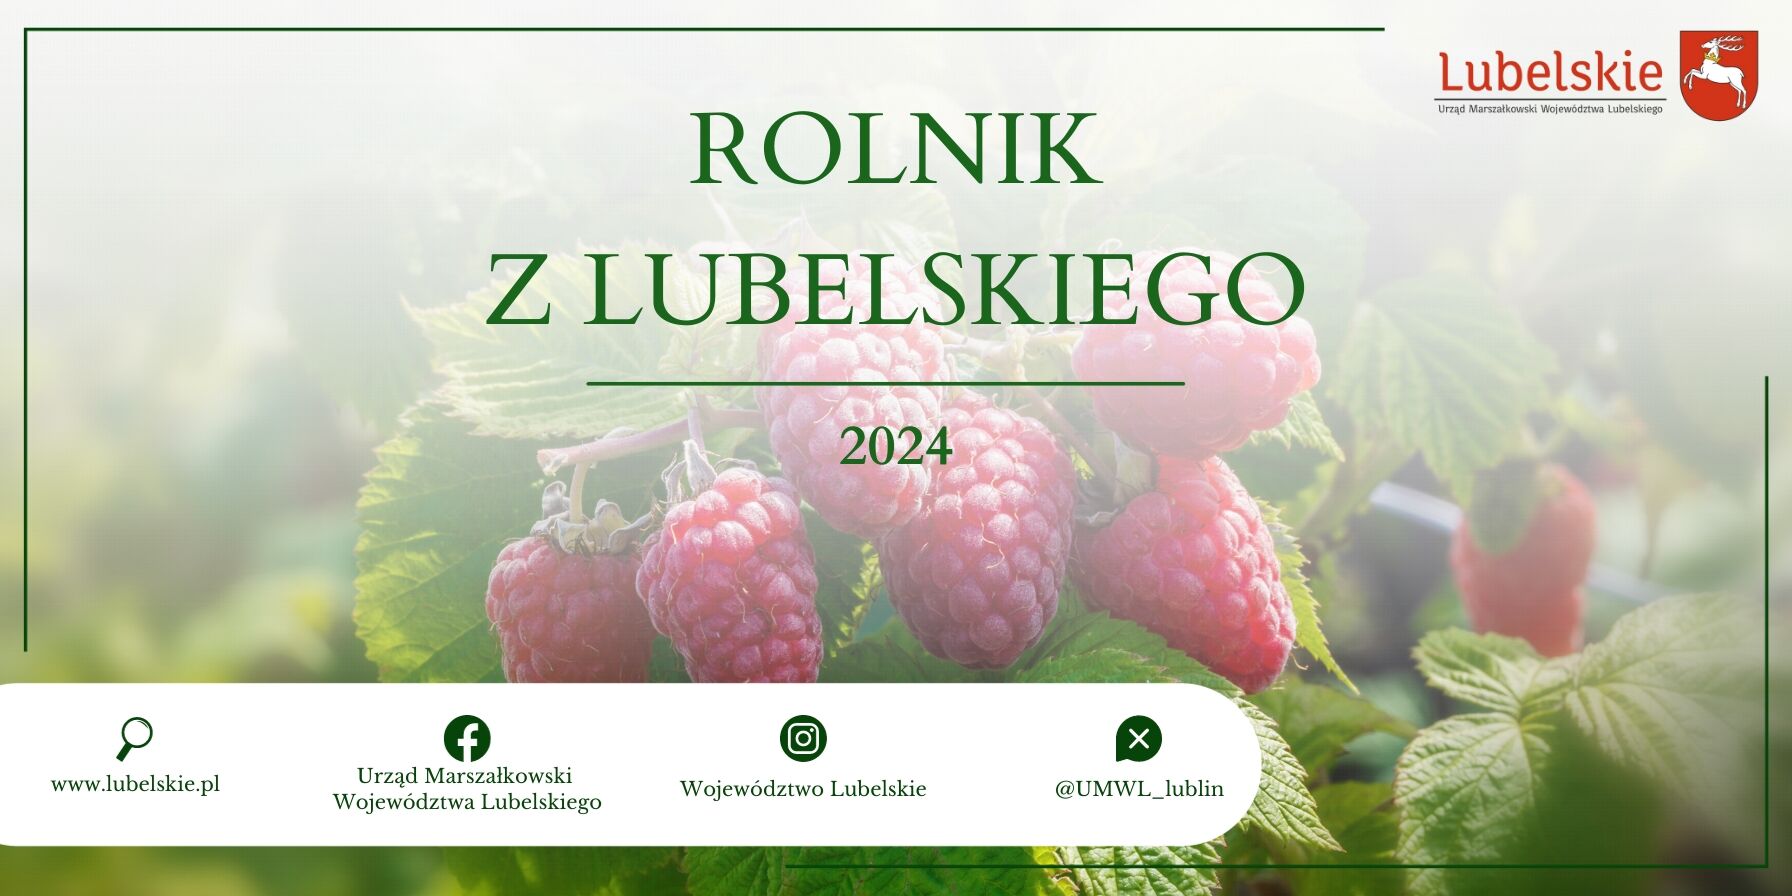 Obraz przedstawia grafikę promocyjną z napisem "Rolnik z Lubelskiego 2024" na tle dojrzałych malin. Obok tekstu znajdują się logotypy Urzędu Marszałkowskiego i Województwa Lubelskiego oraz ikony mediów społecznościowych.